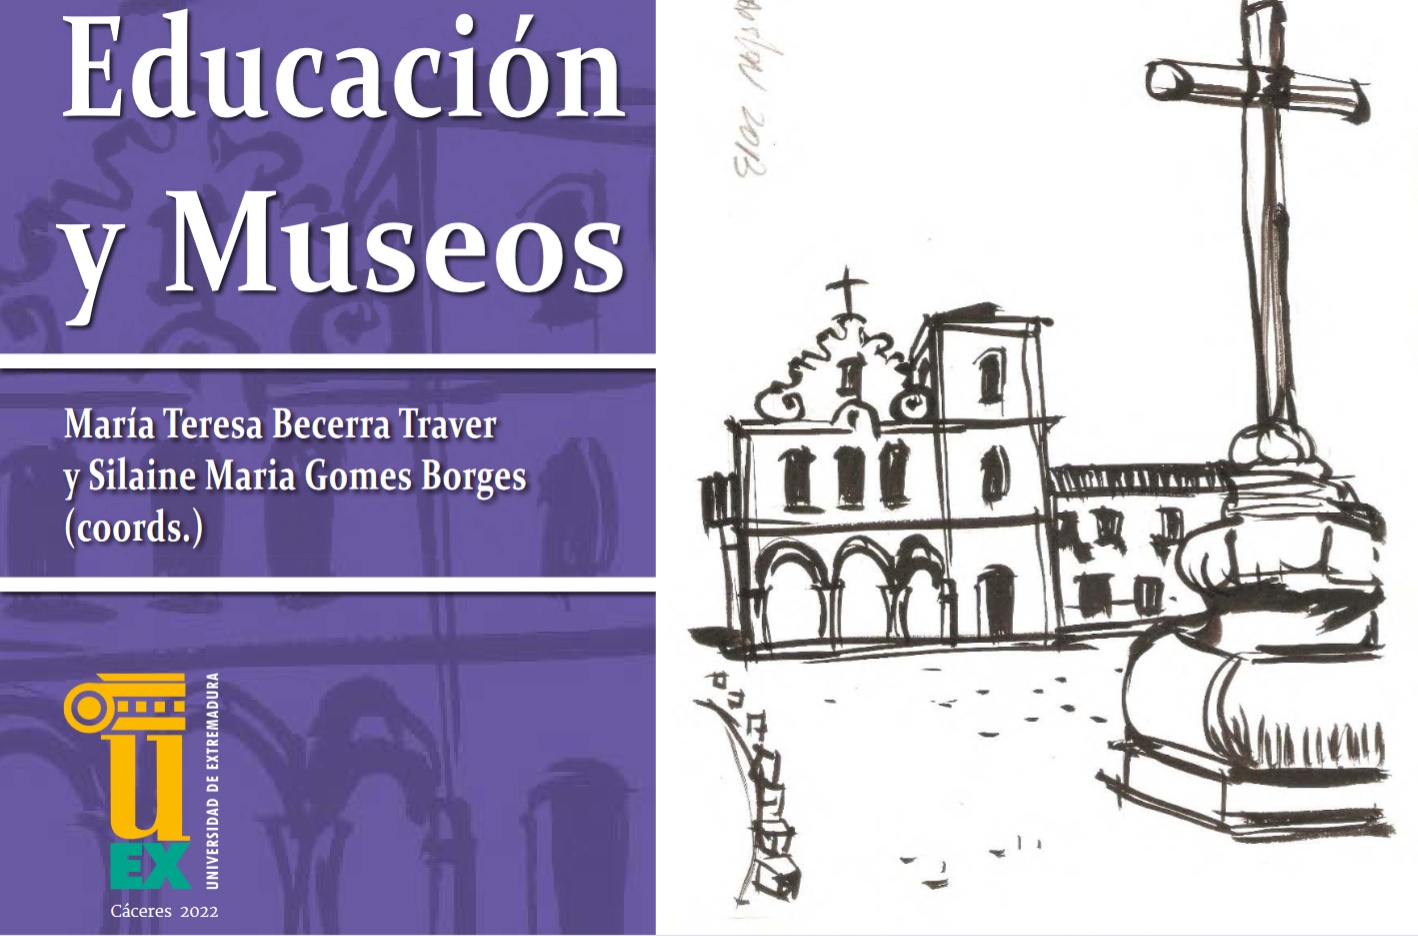 Imagen de portada del libro Educación y museos